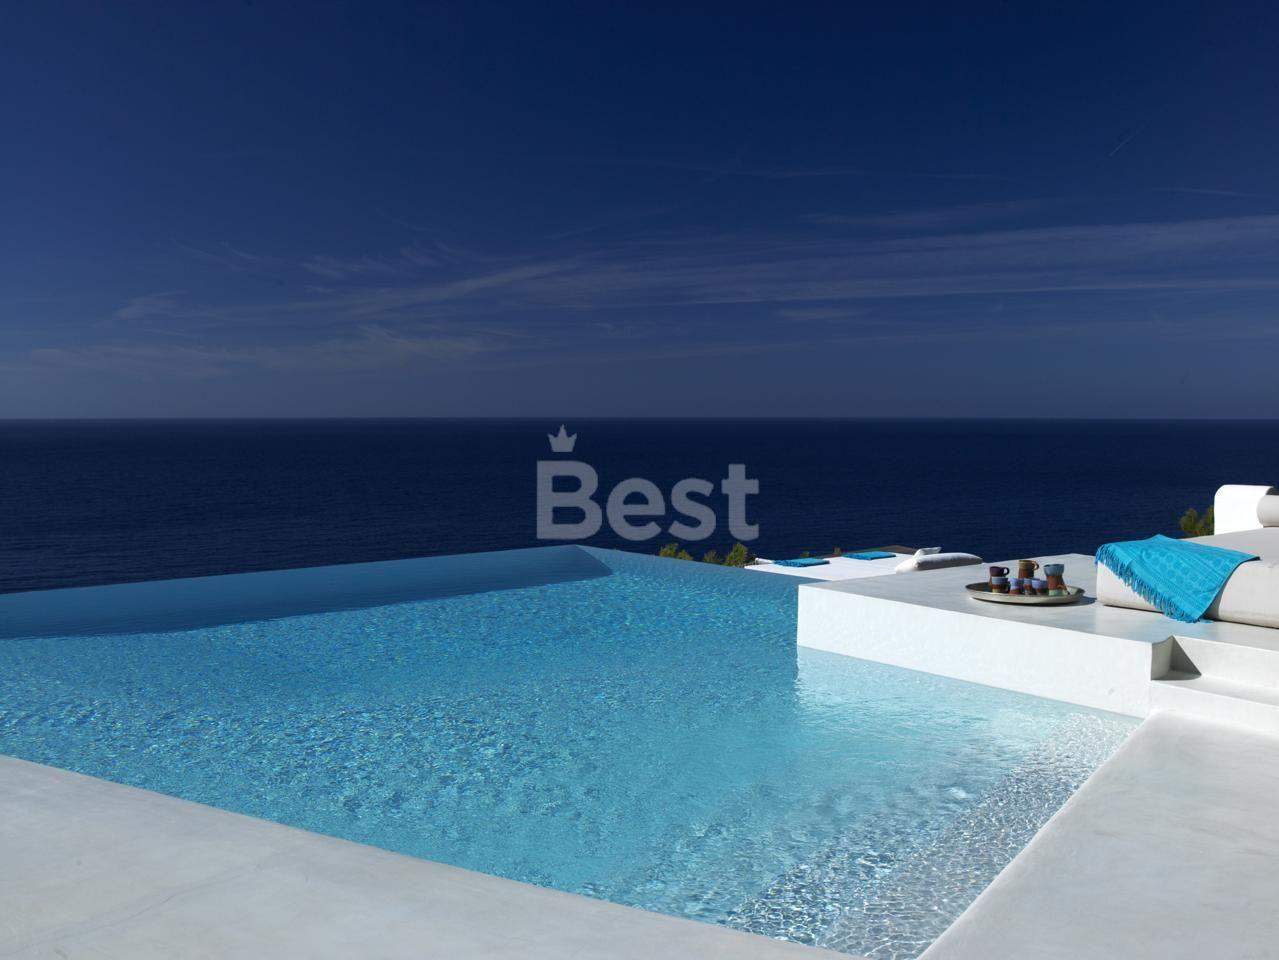 Espectacular villa en alquiler en primera linea al mar en Cala Moli, SAN JOSE, Ibiza REF: PLRK1701